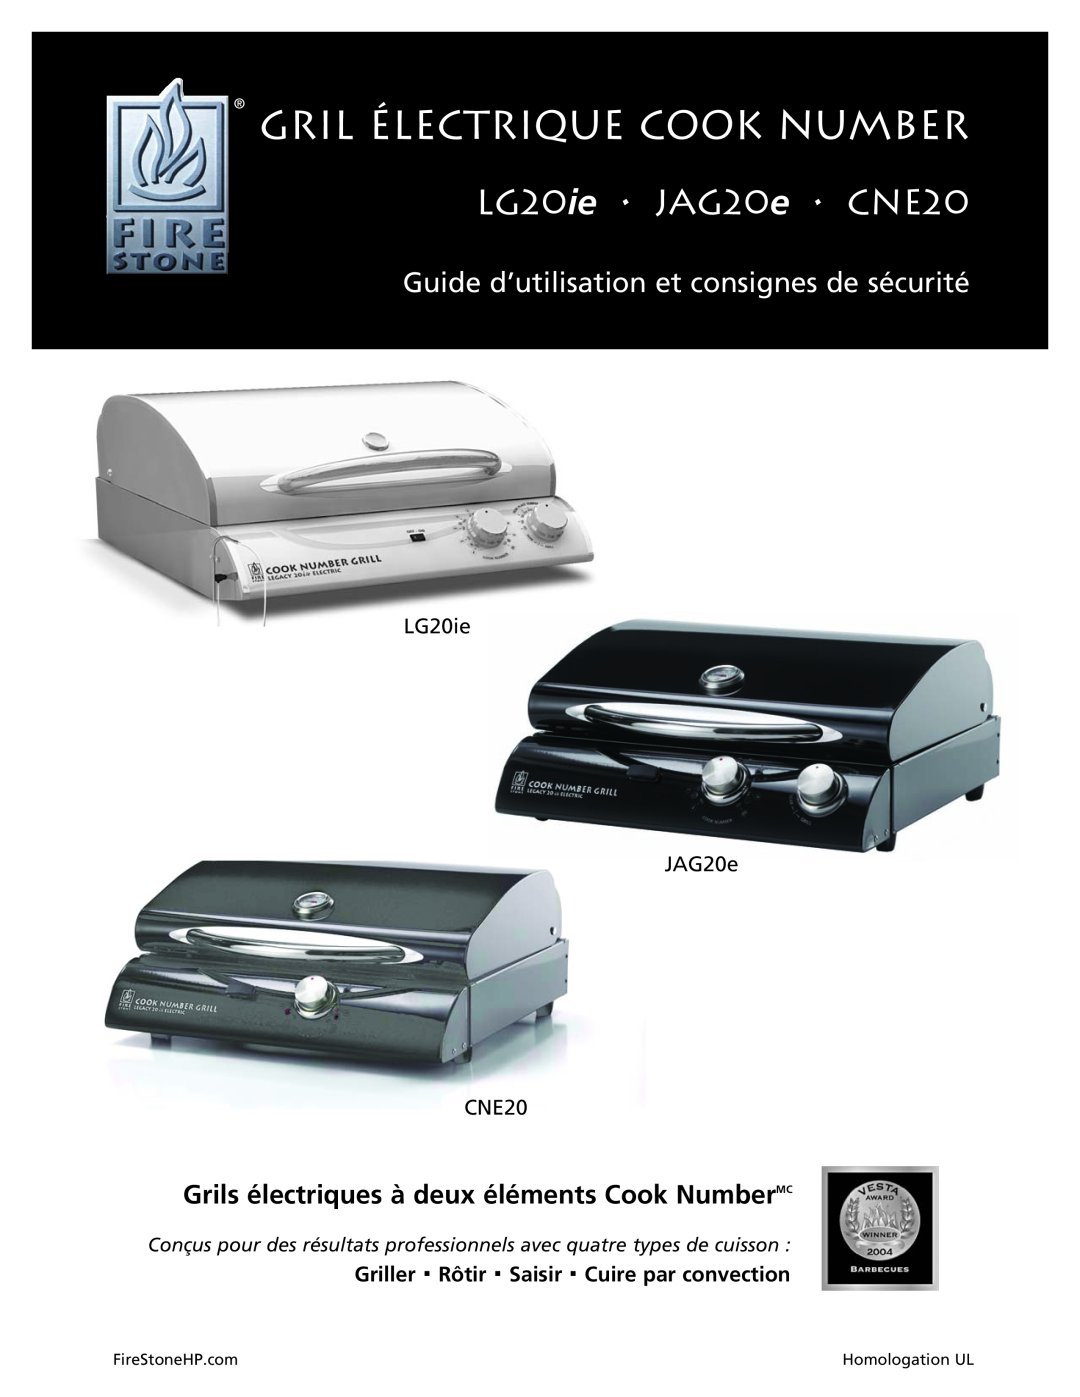 Dual Gril Électrique Cook Number, Guide d’utilisation et consignes de sécurité, LG20ie JAG20e CNE20, FireStoneHP.com 